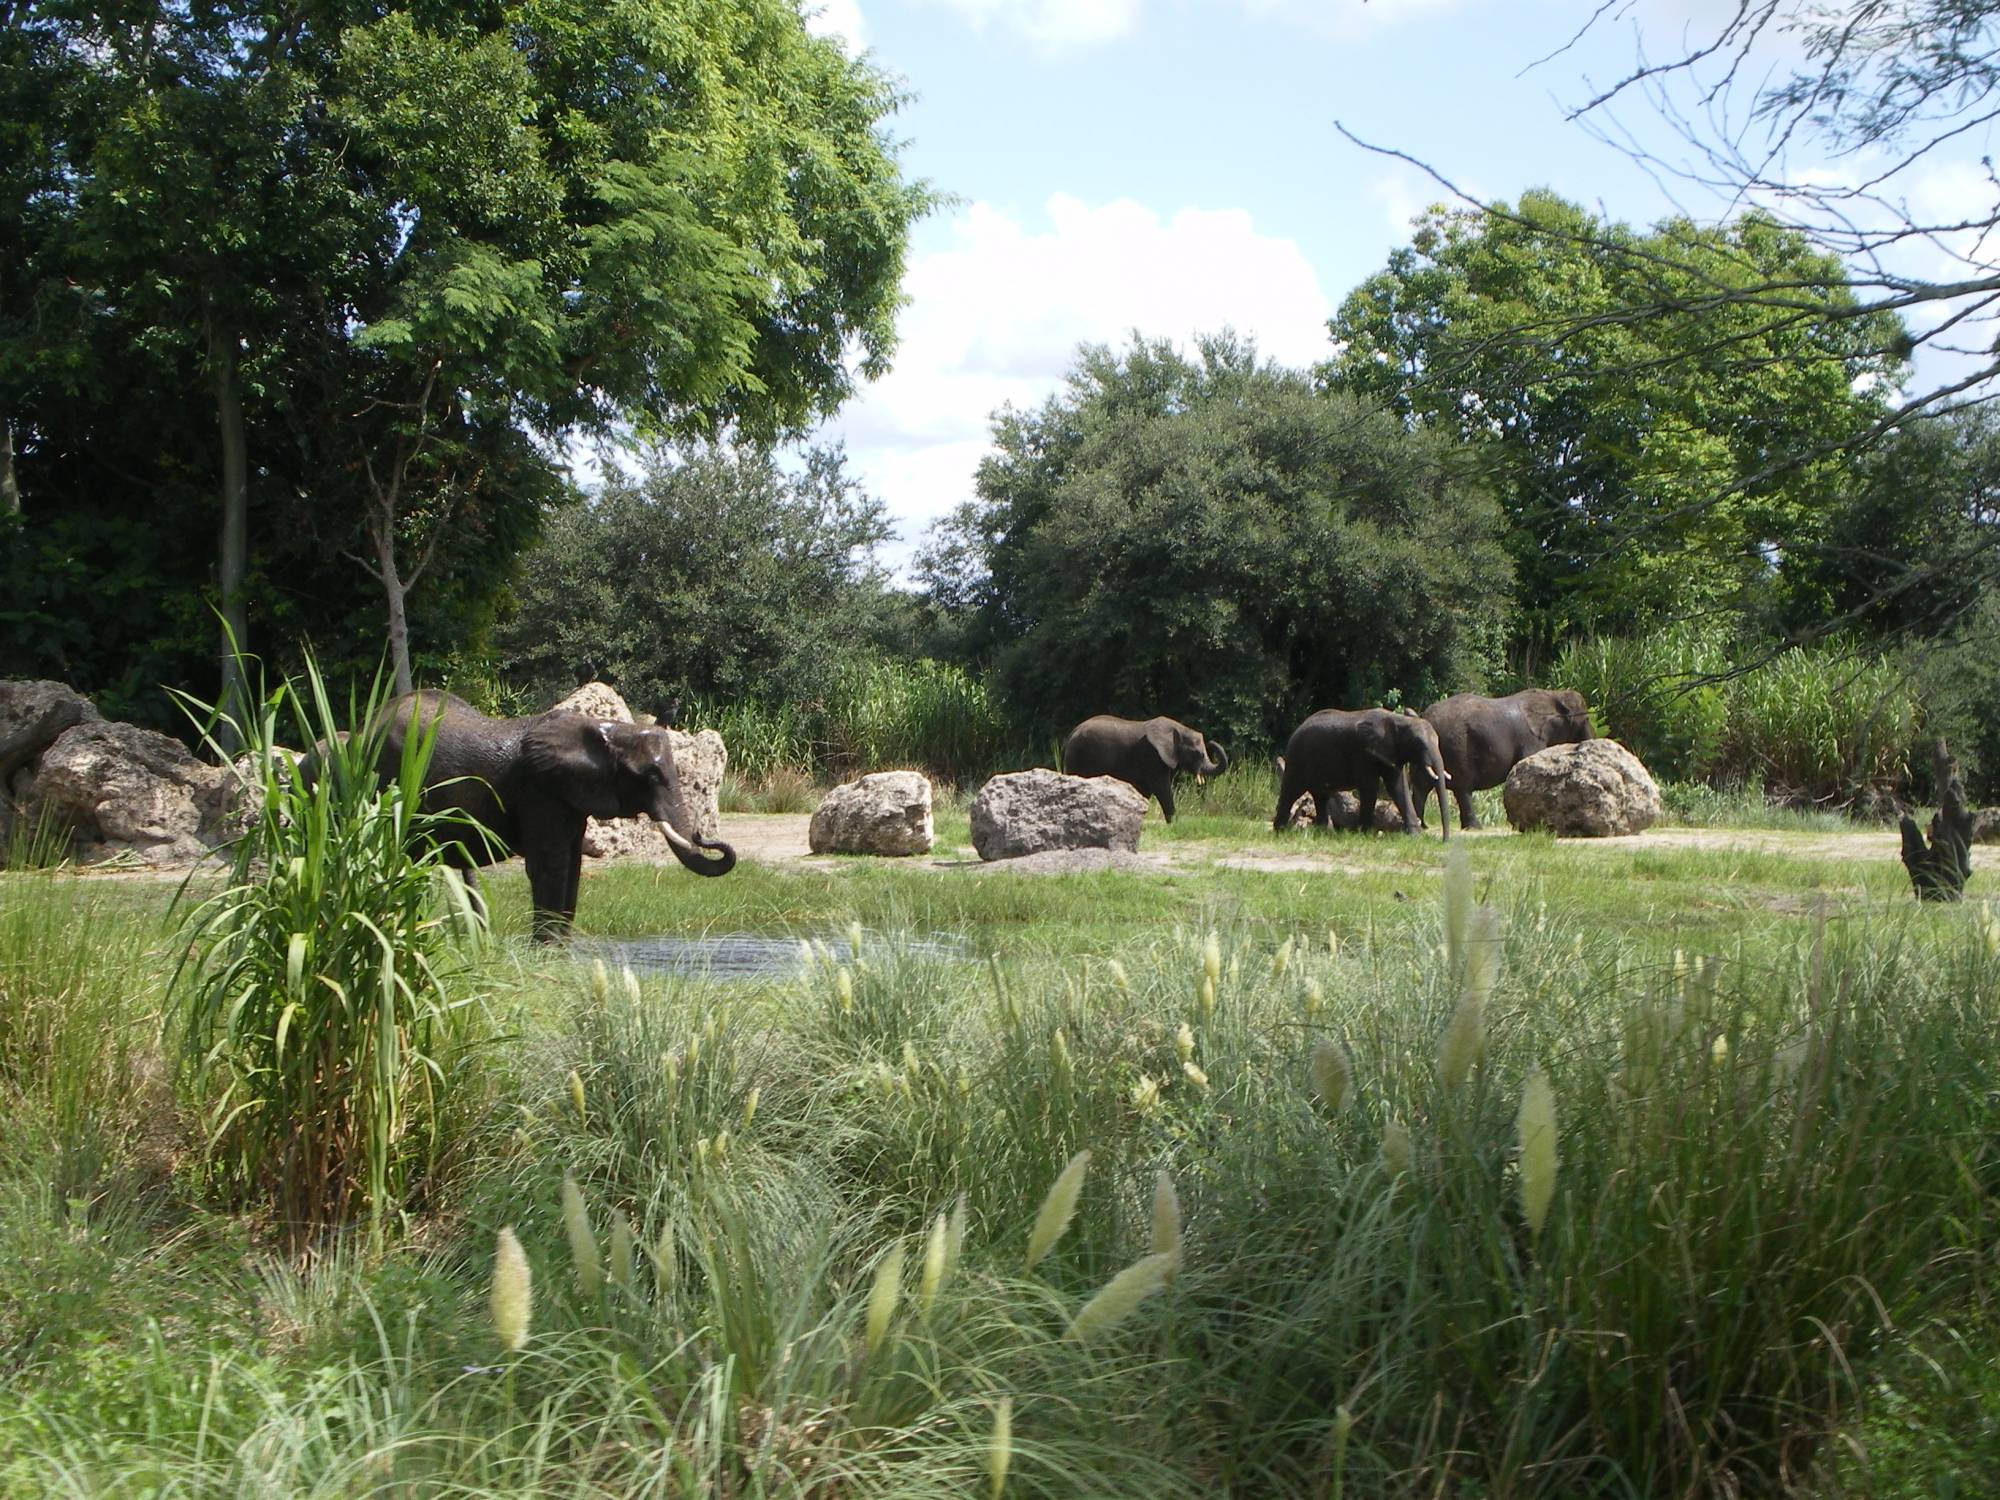 Animal Kingdom - Elephants on the Savannah